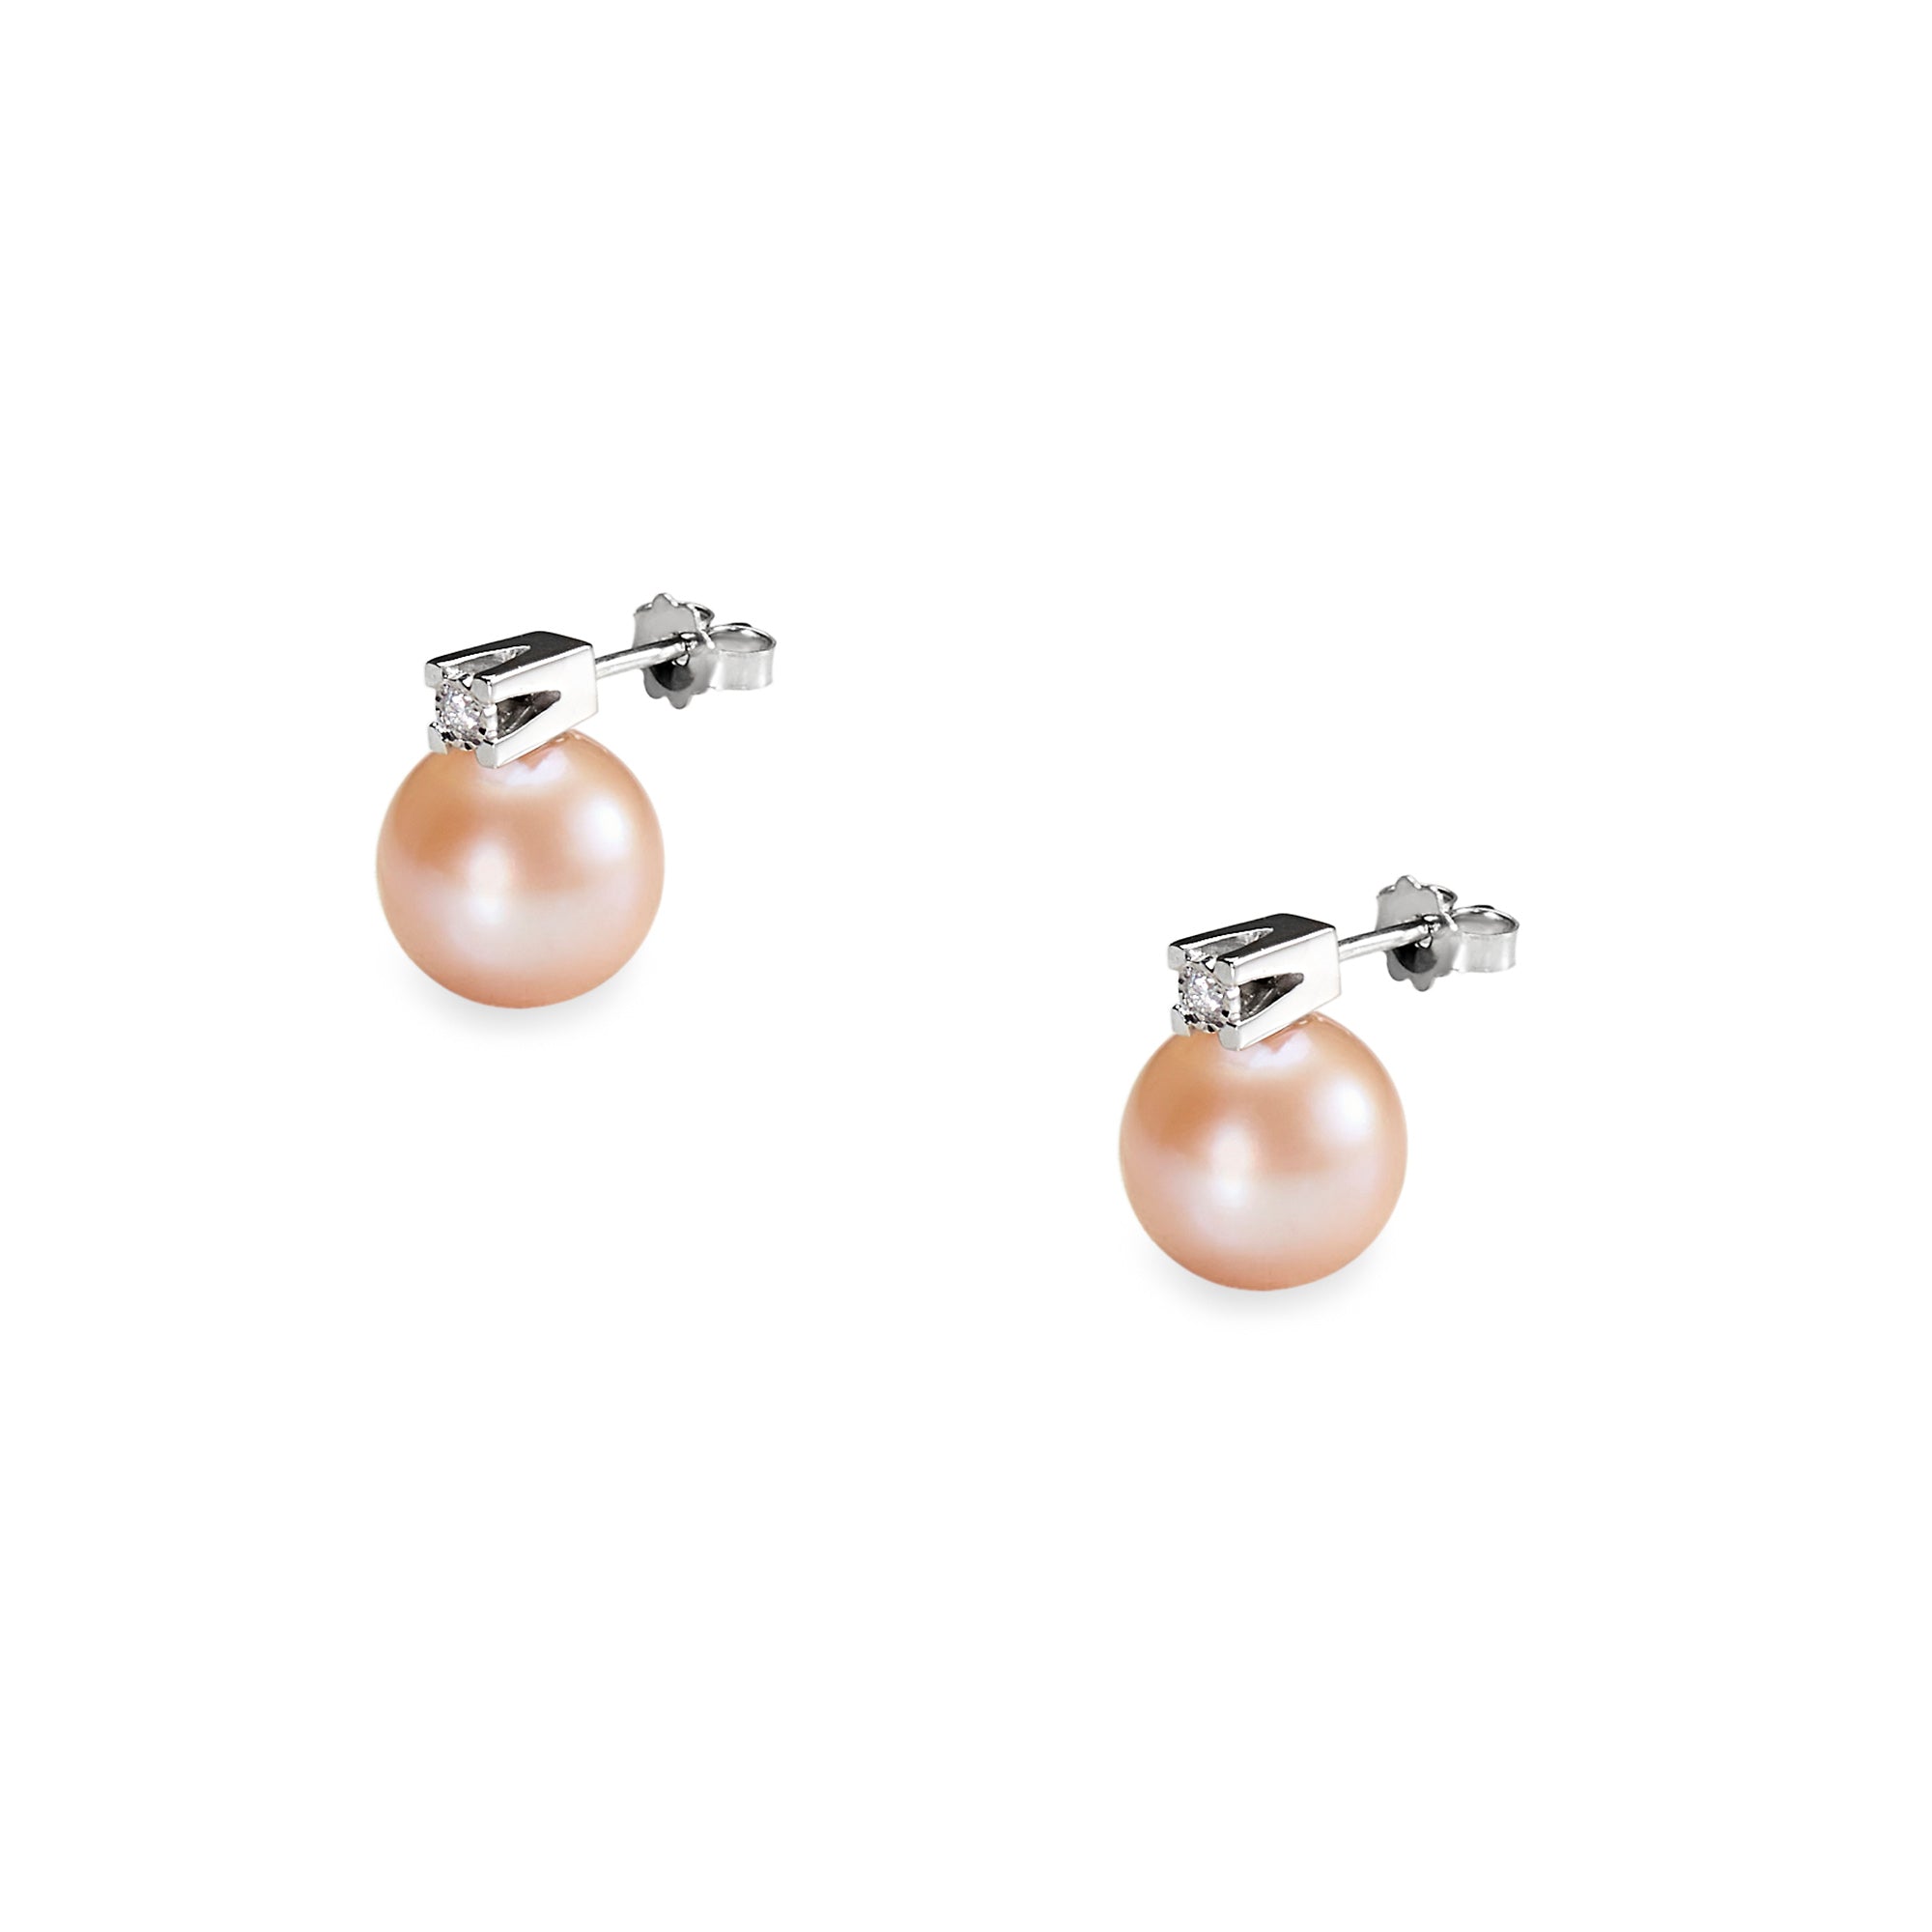 Cercei aur alb cu perle apa dulce 11-12 mm si diamante 0.08 ct